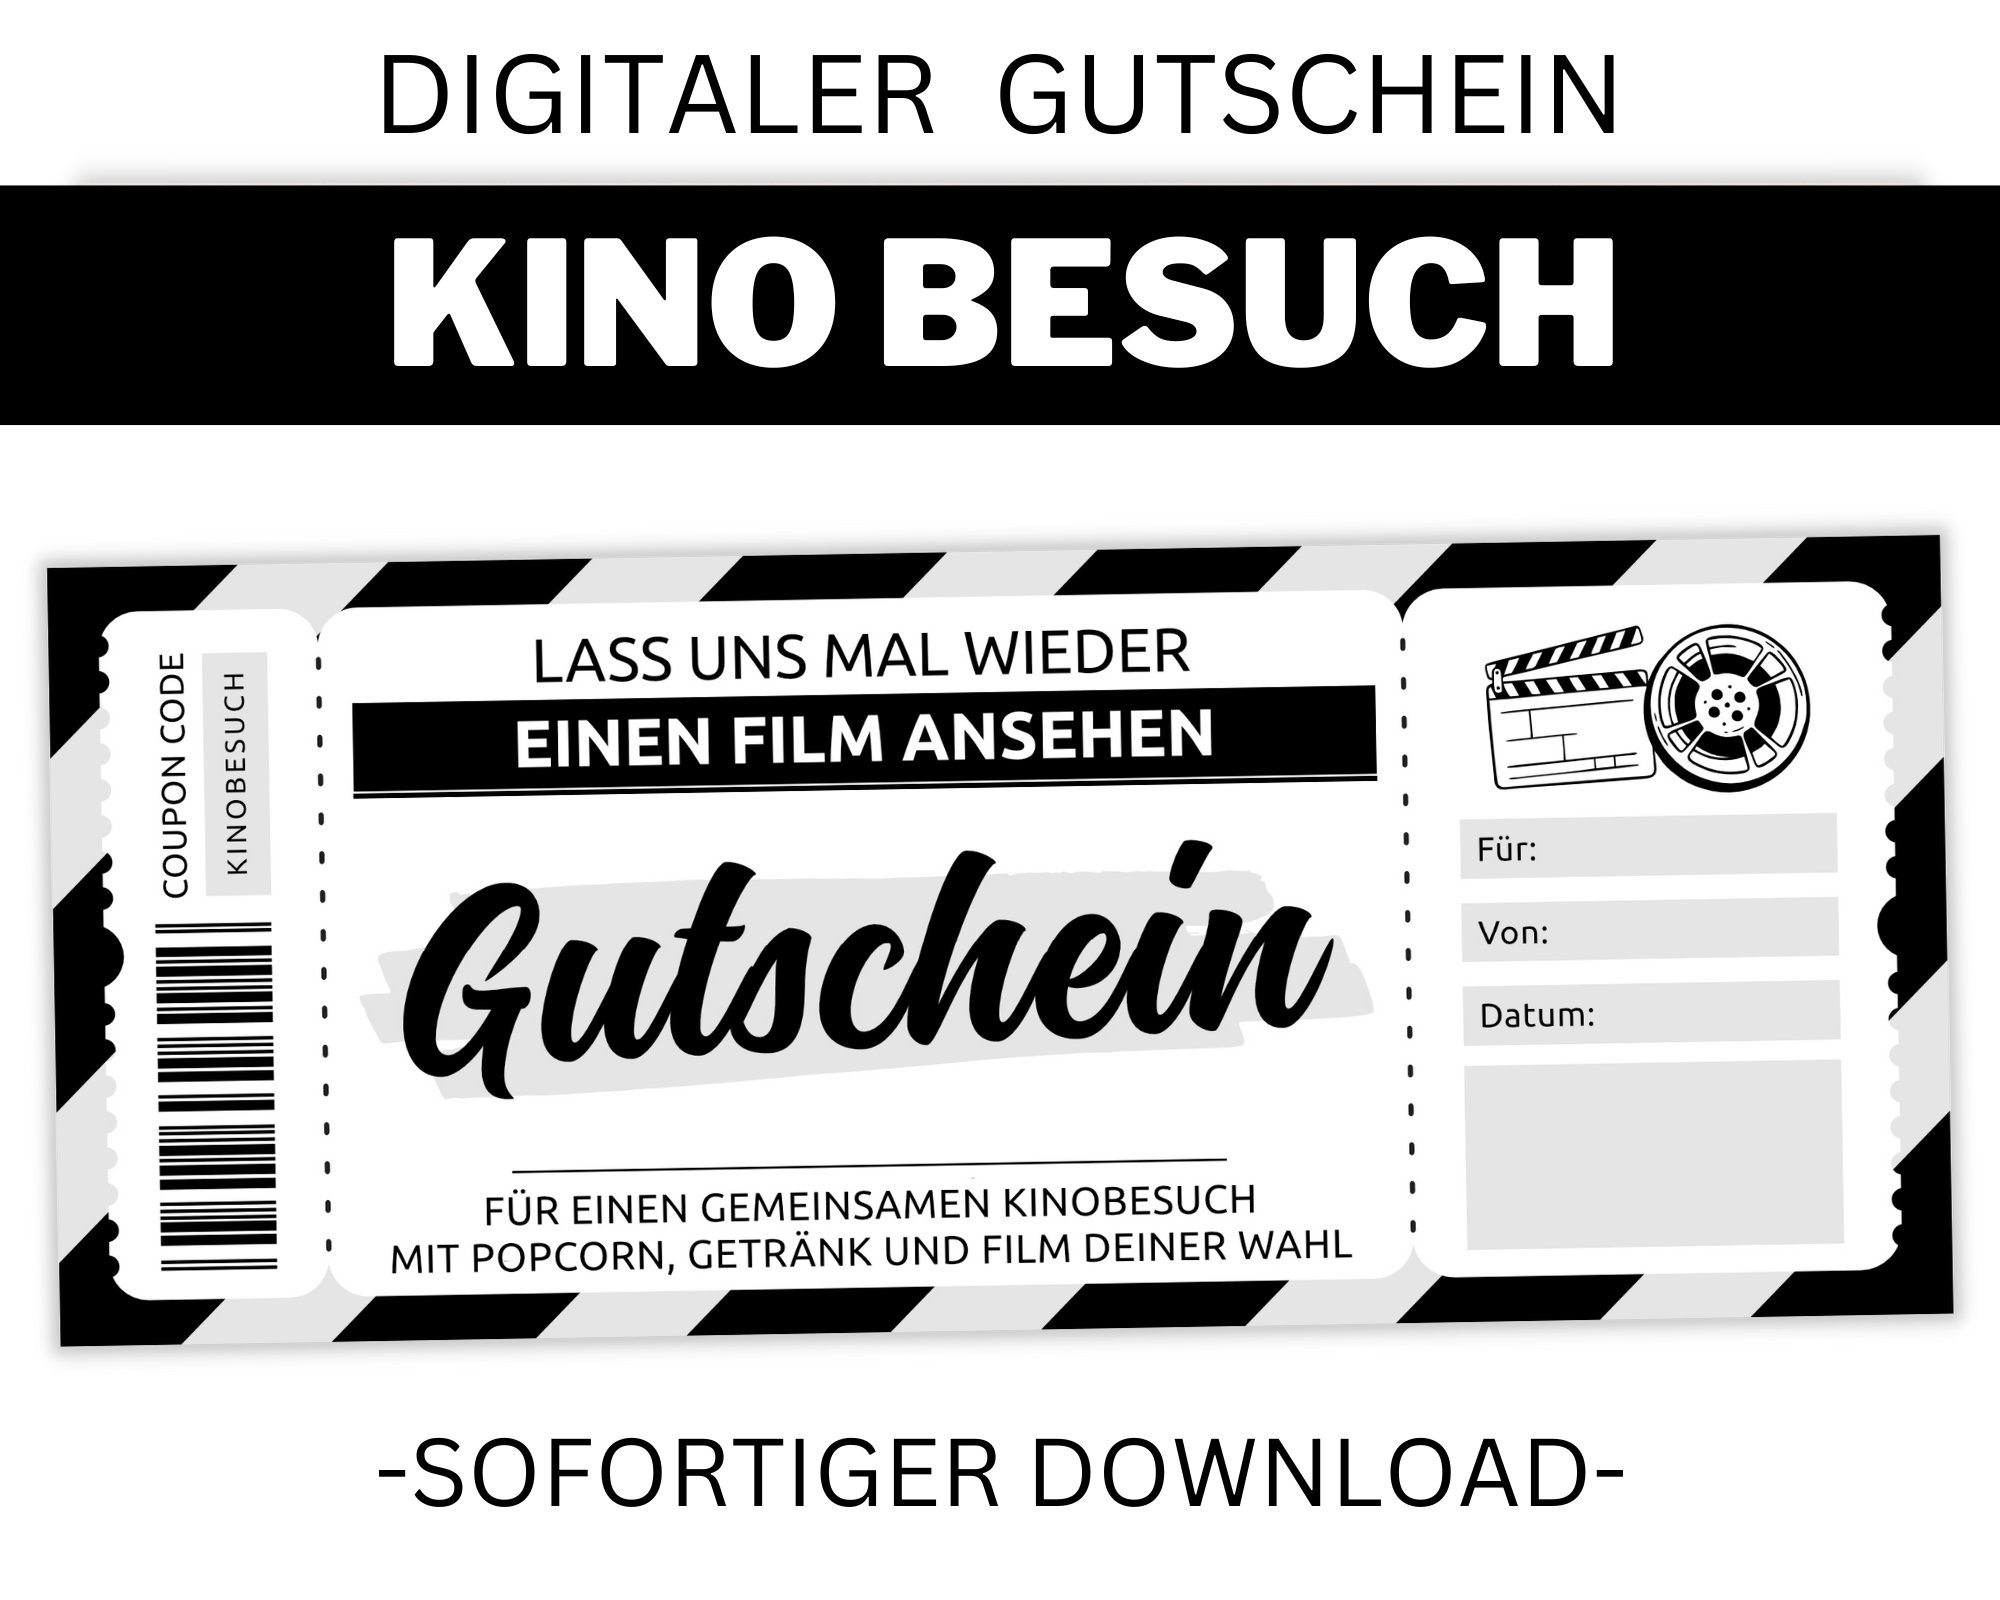 Kino Gutschein Vorlage editierbar Ausdrucken Gutscheinvorlage zum  ausdrucken Geschenkidee Personalisierbar Download